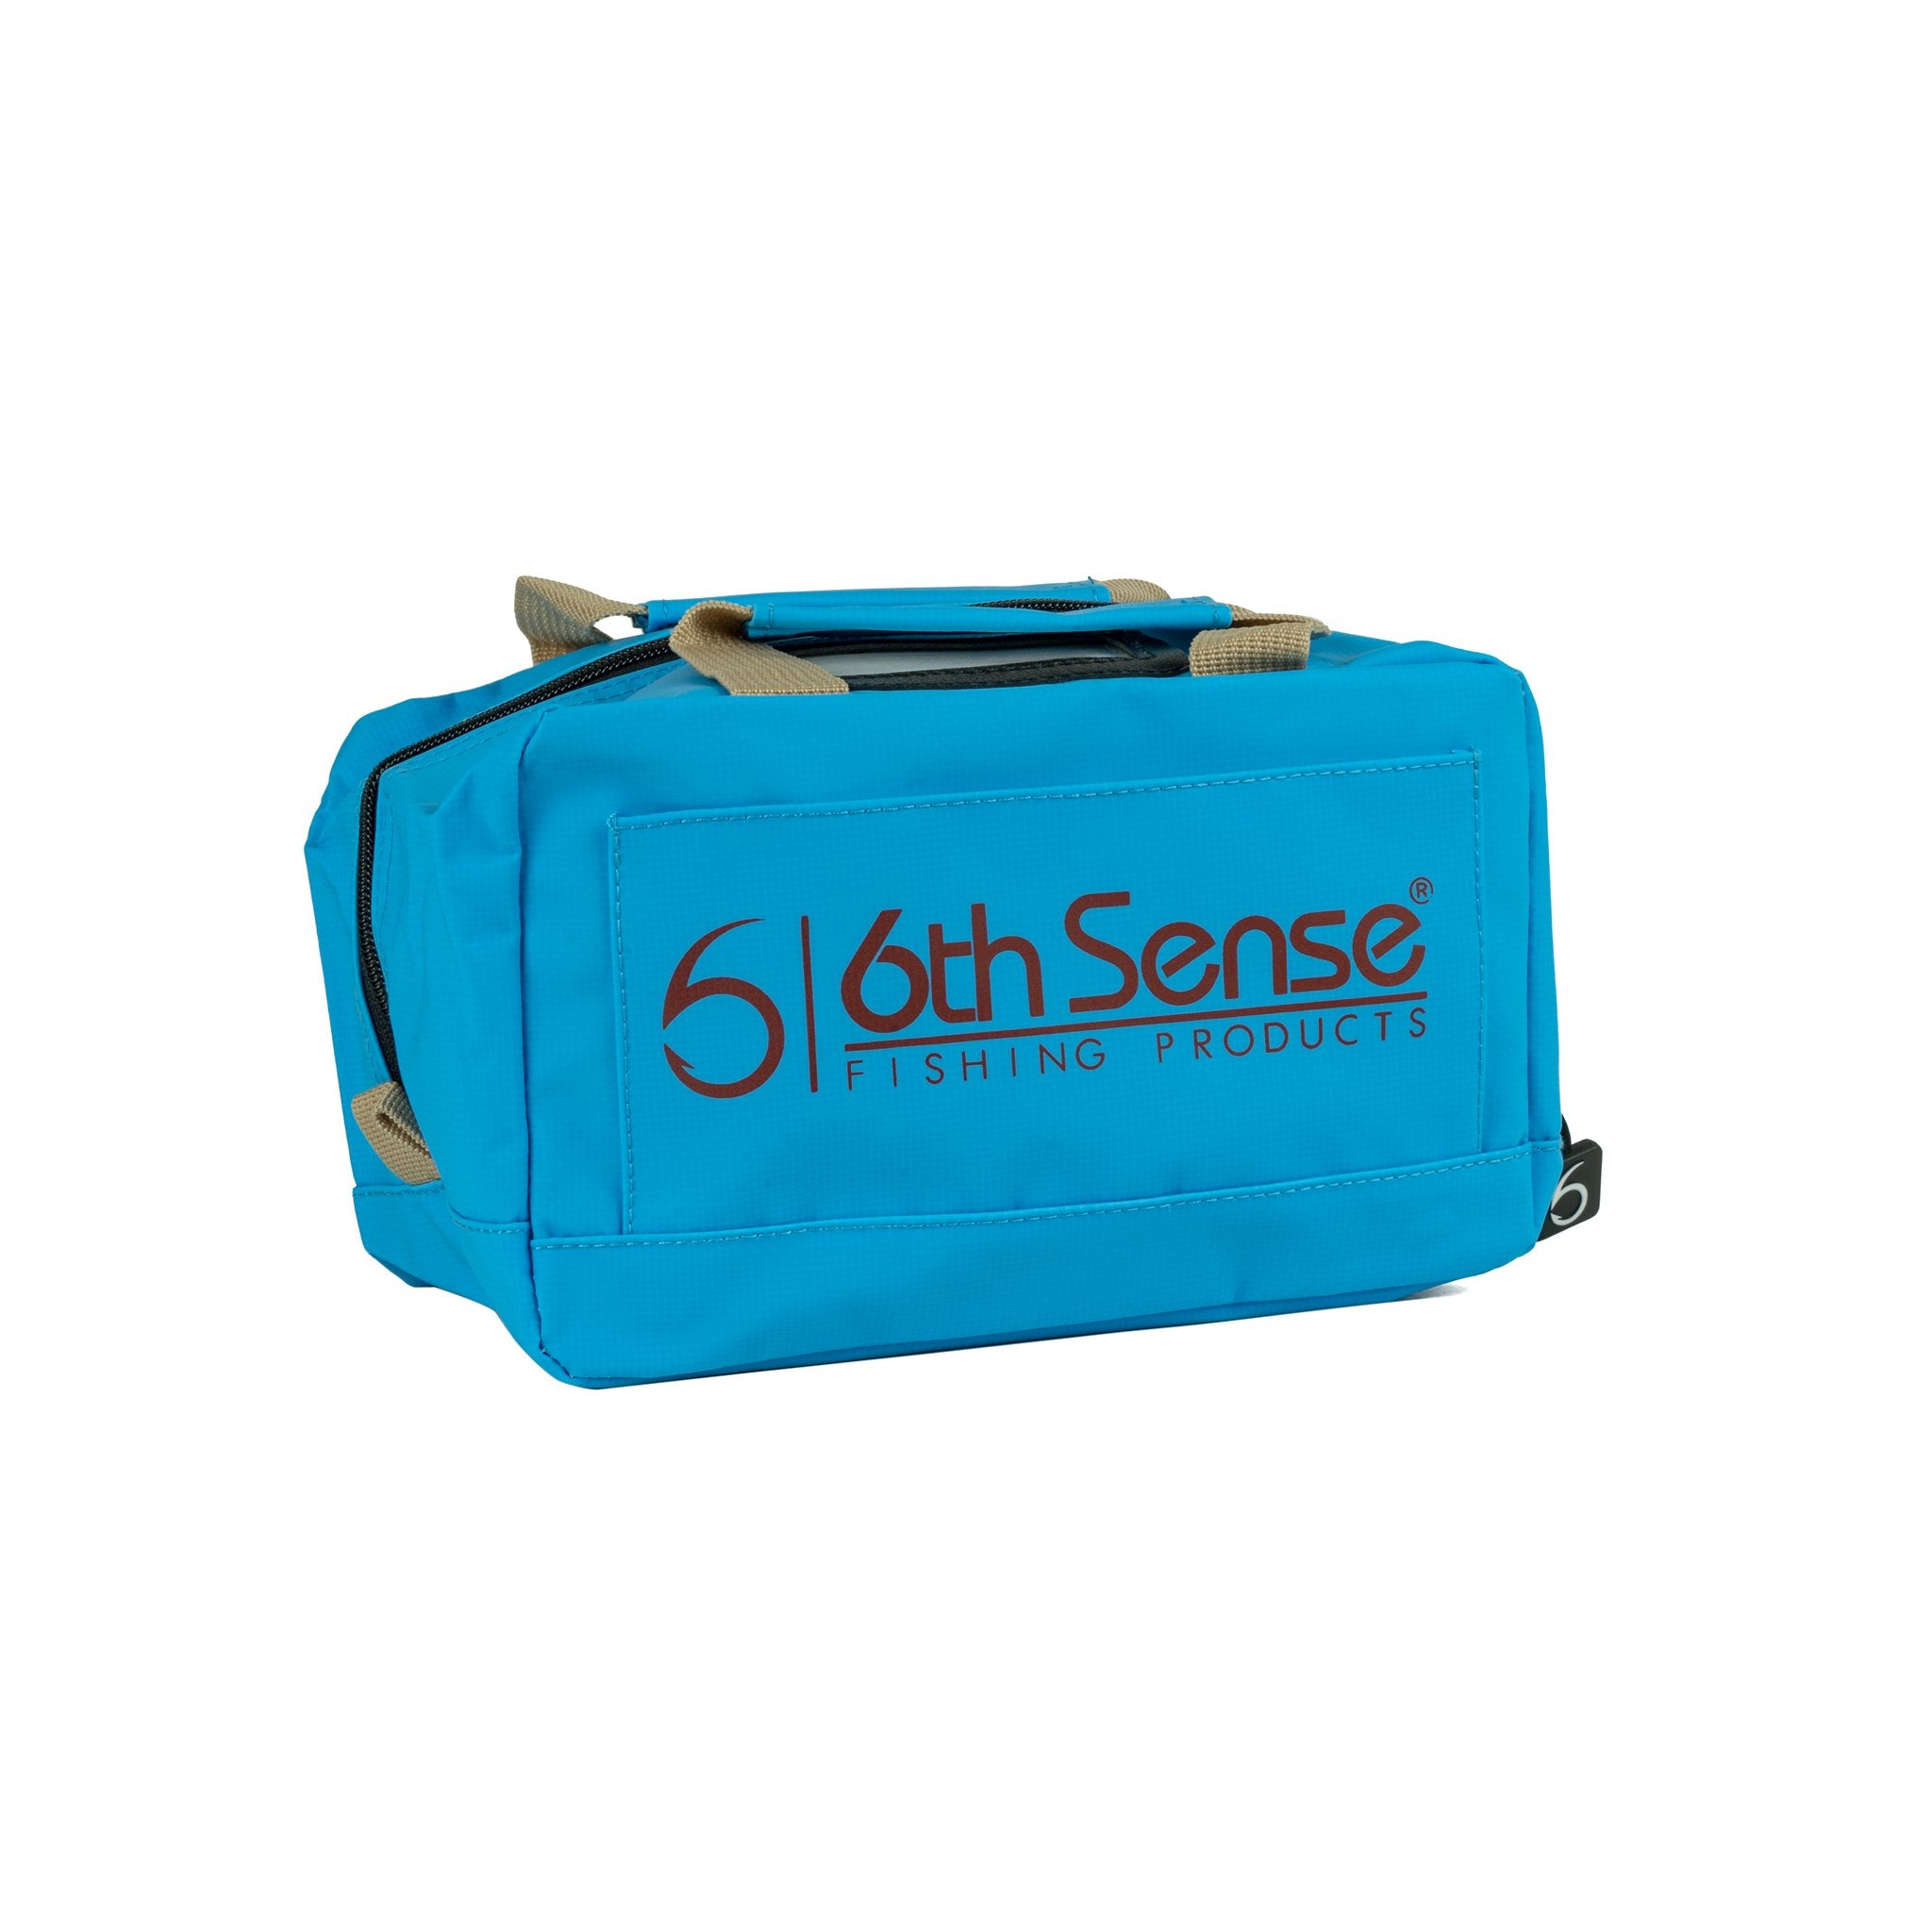 6th Sense Bait Bag - Small - Blue